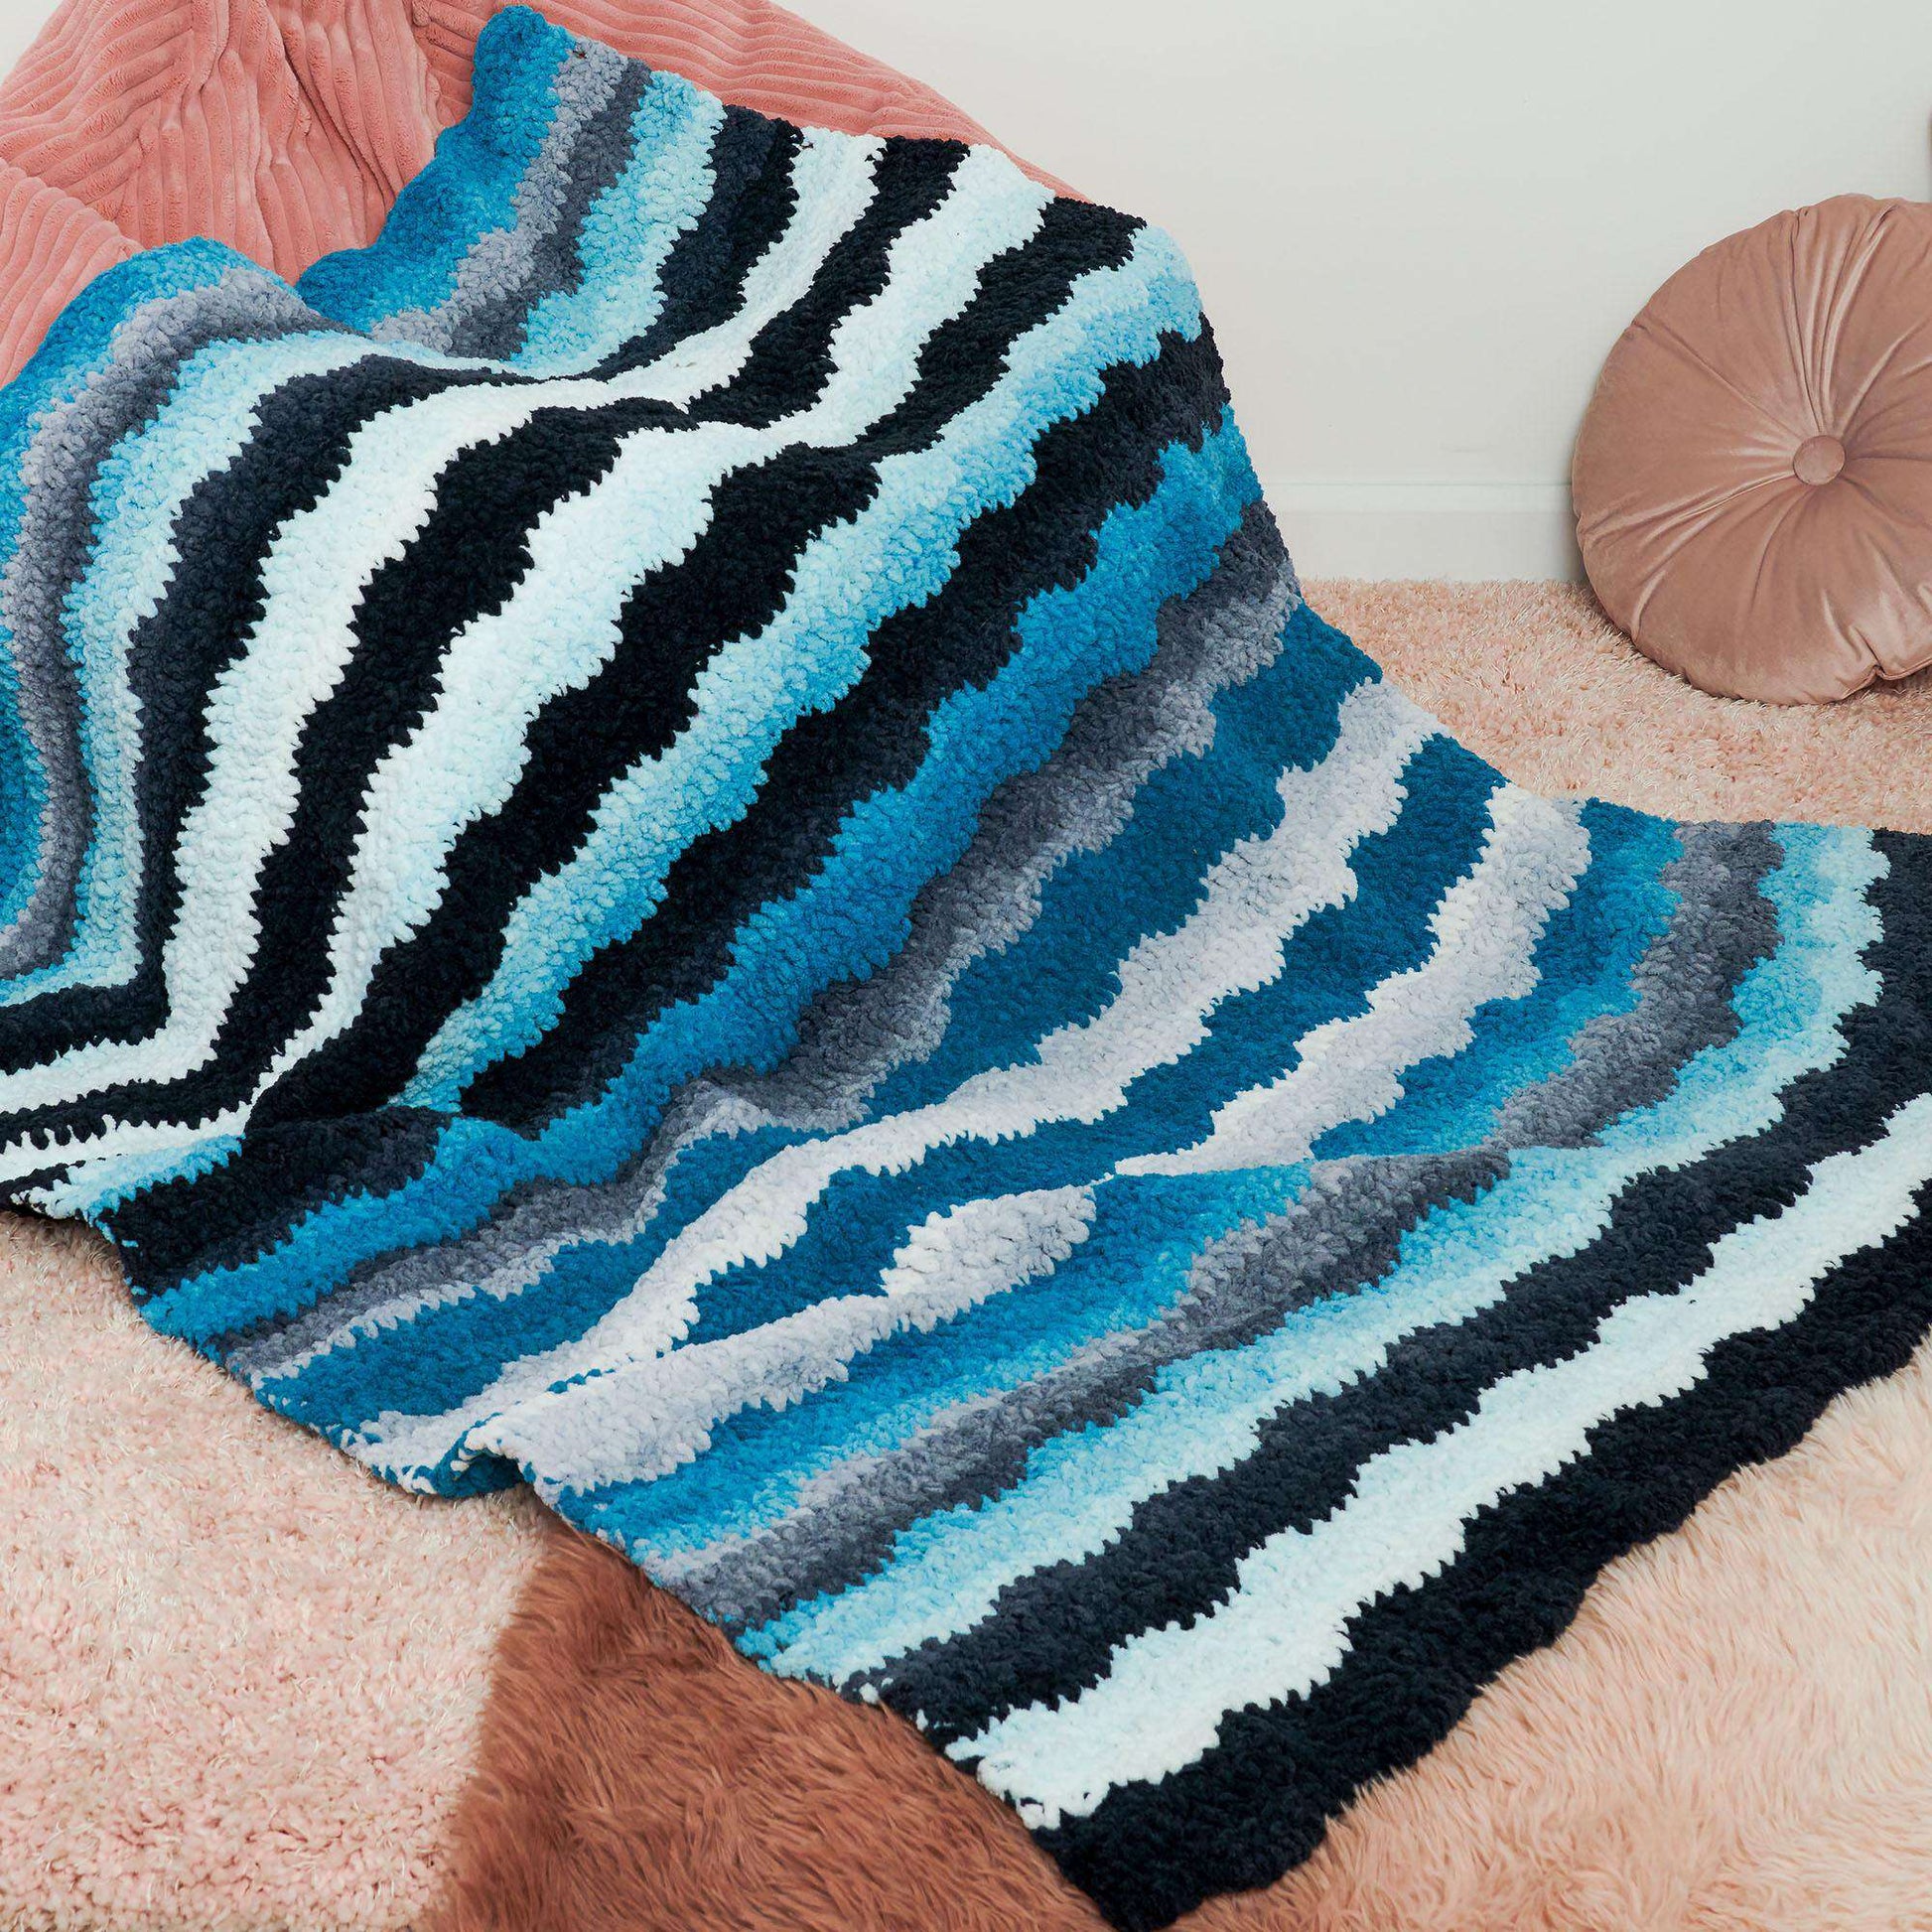 Free Bernat Waving Stripes Crochet Blanket Pattern